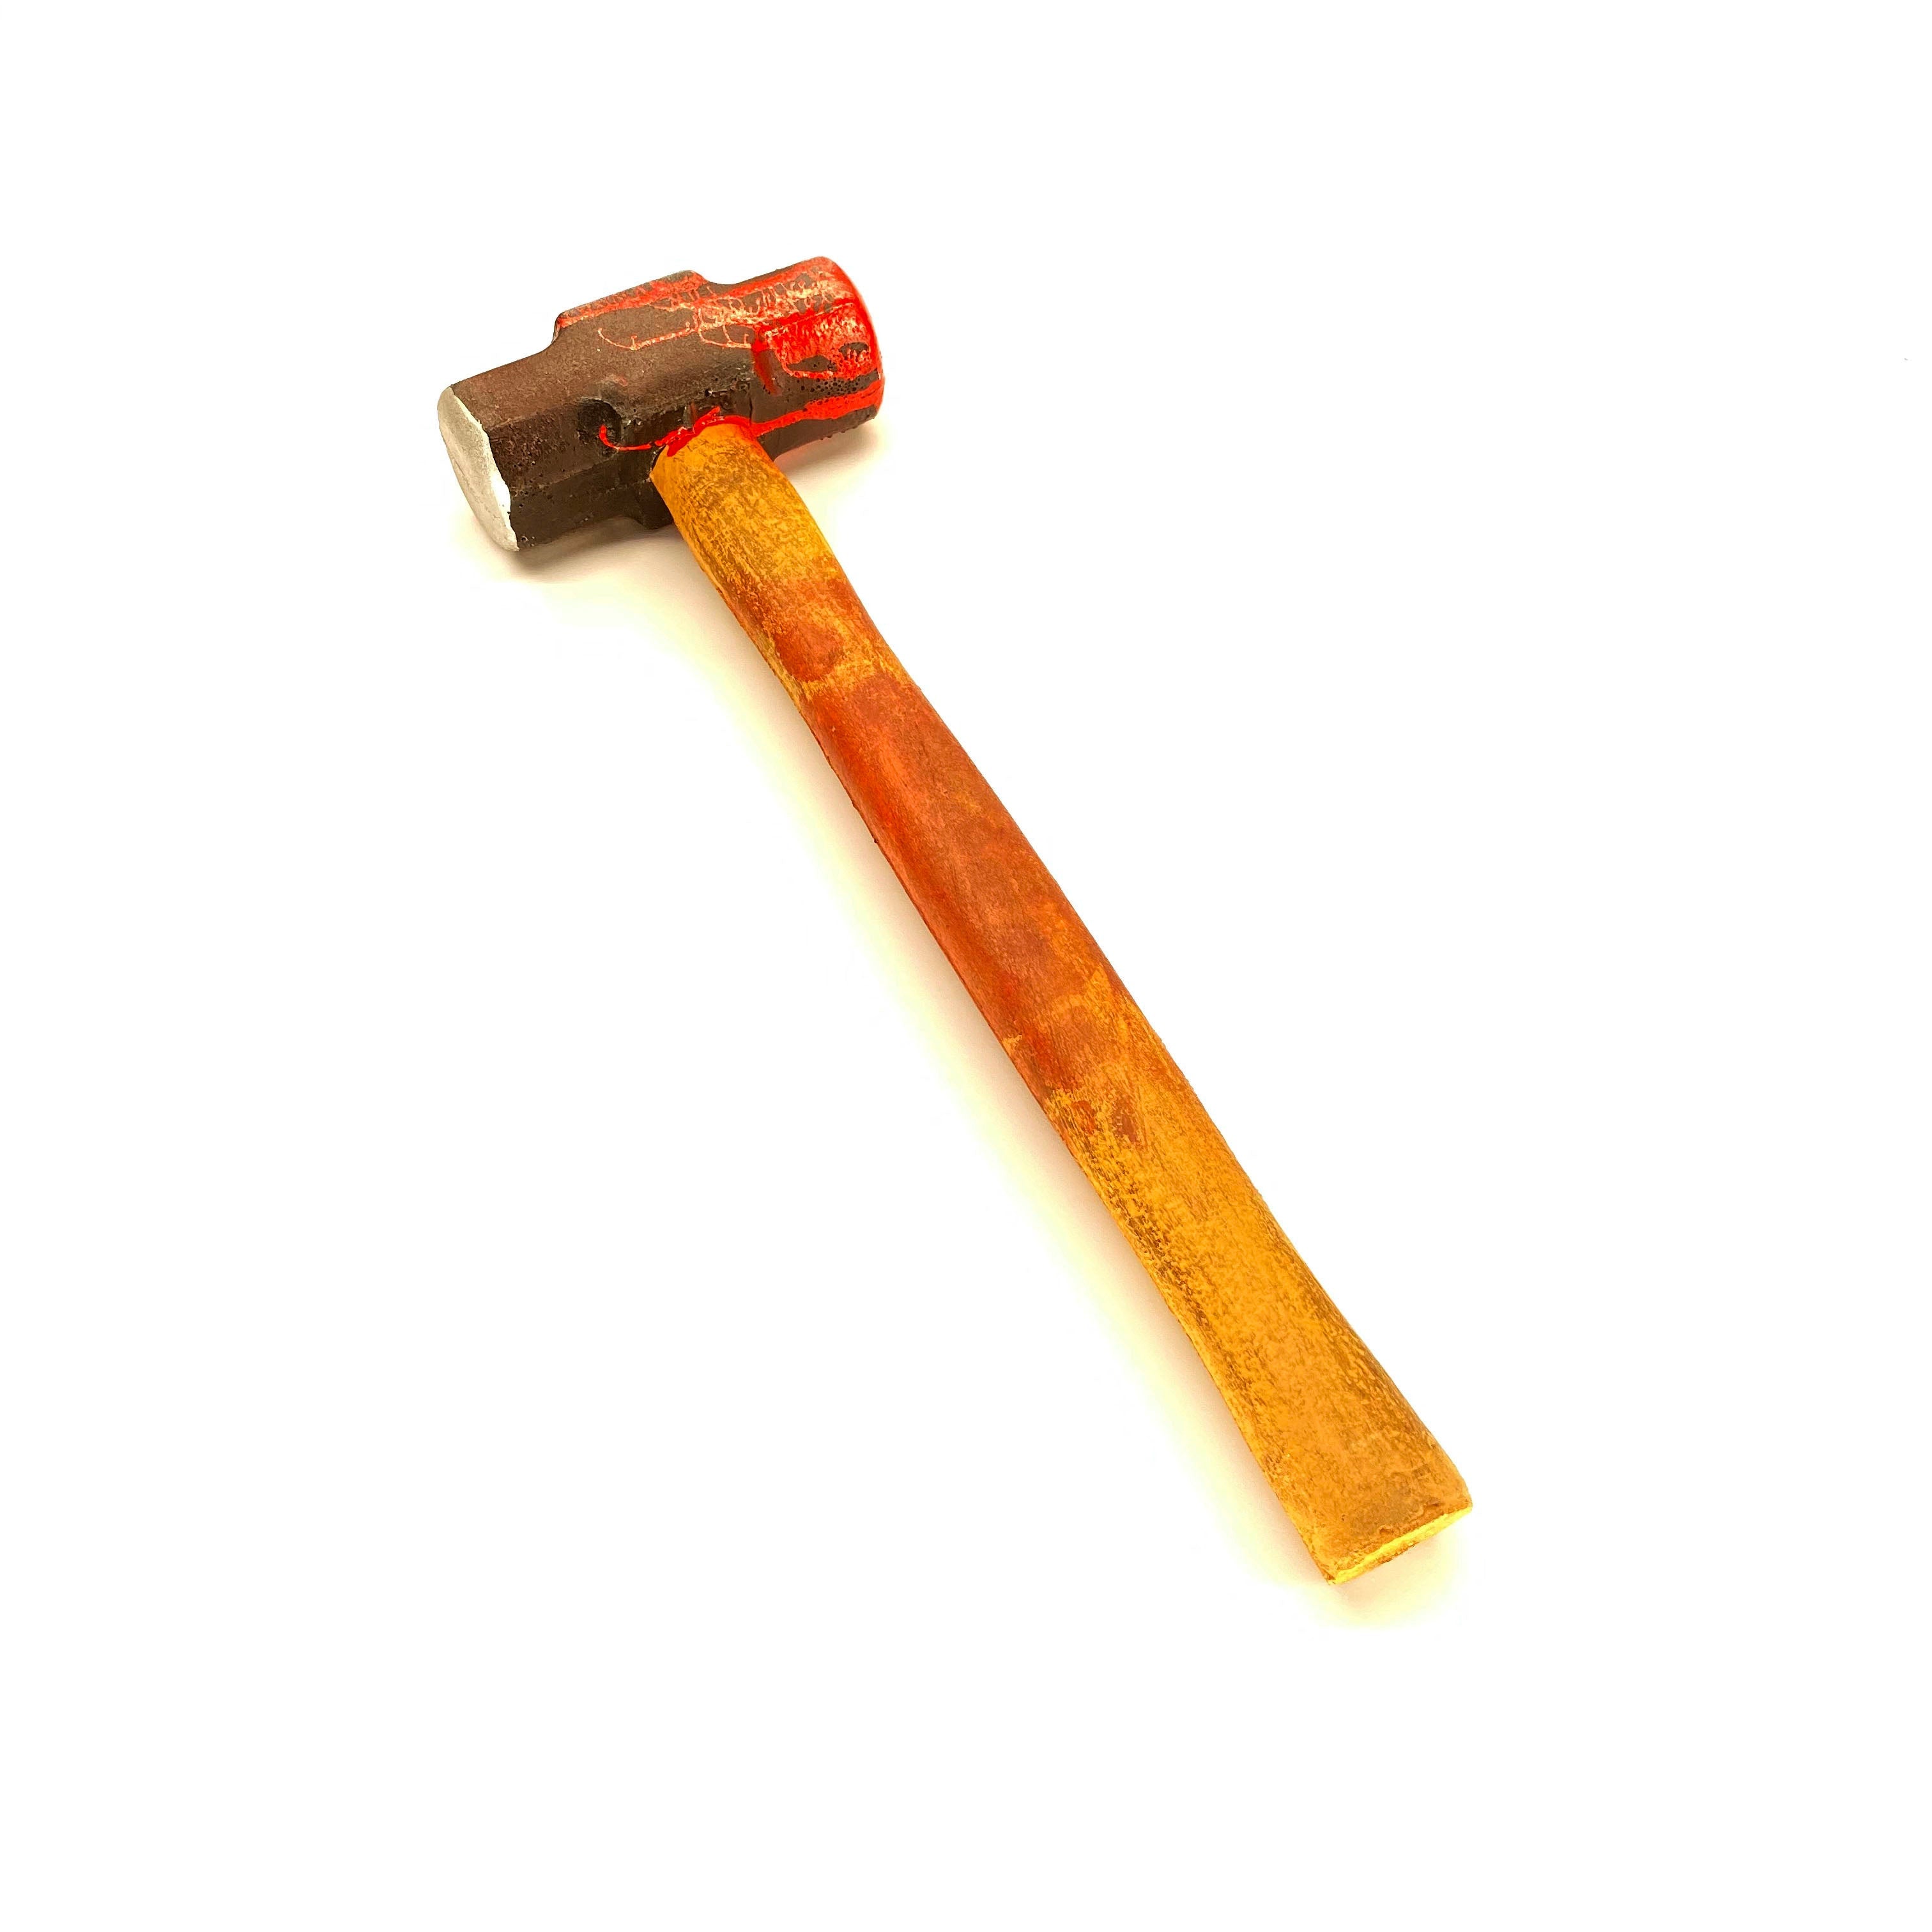 16 Inch Standard Size Foam Rubber Sledgehammer Prop - Bloody